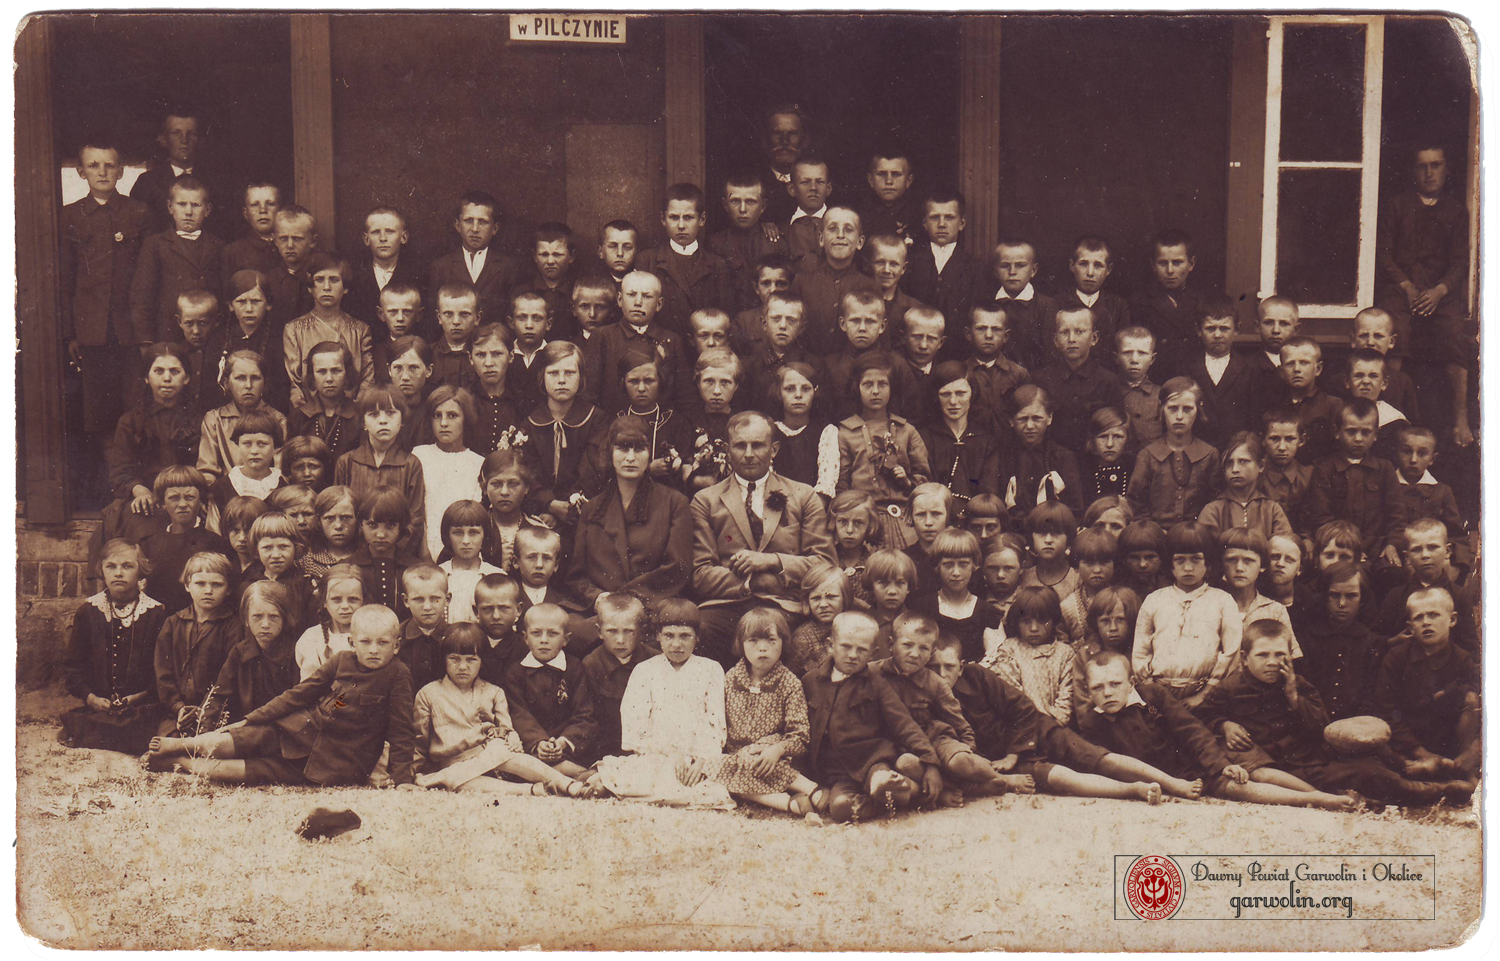 Szkoła w Pilczynie 1930 r.